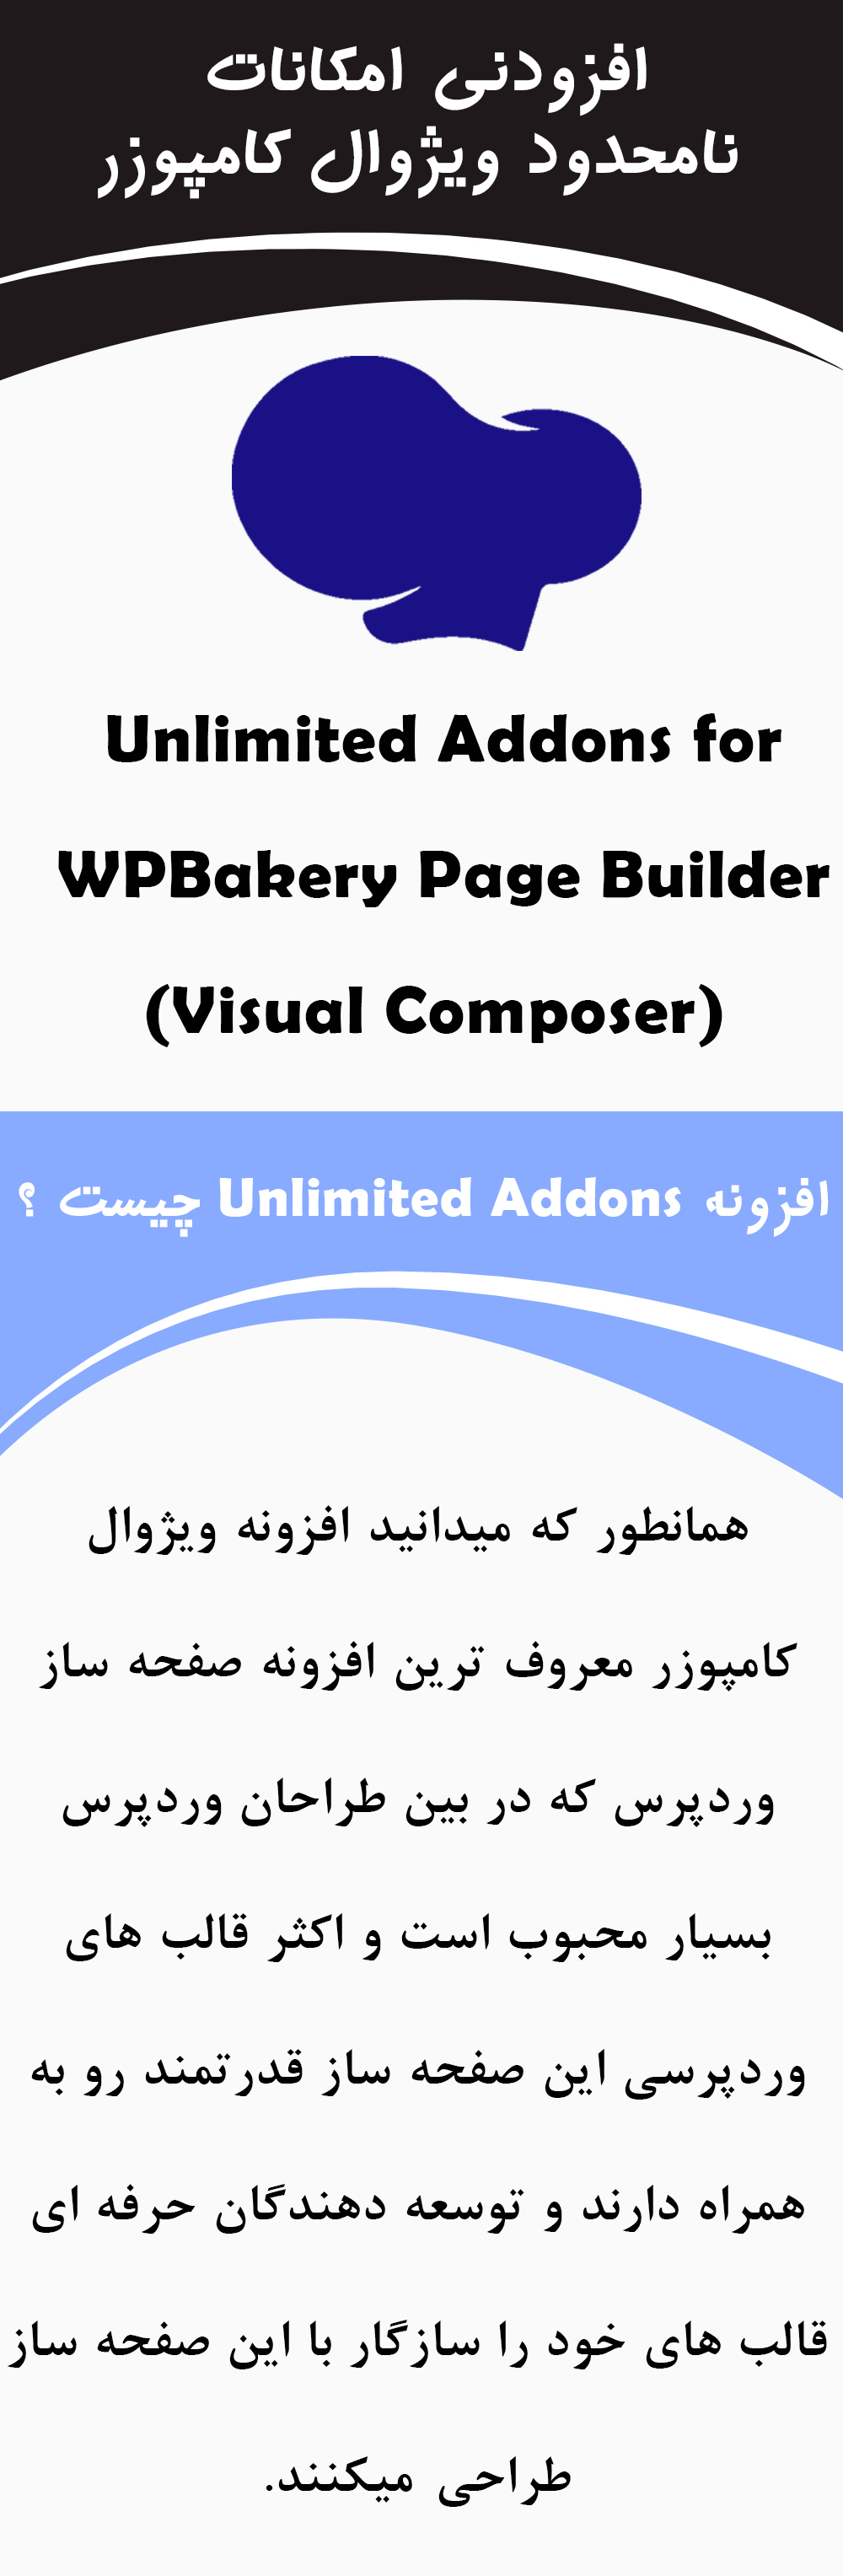 افزونه وردپرس افزودنی های نامحدود WPBakery Page Builder